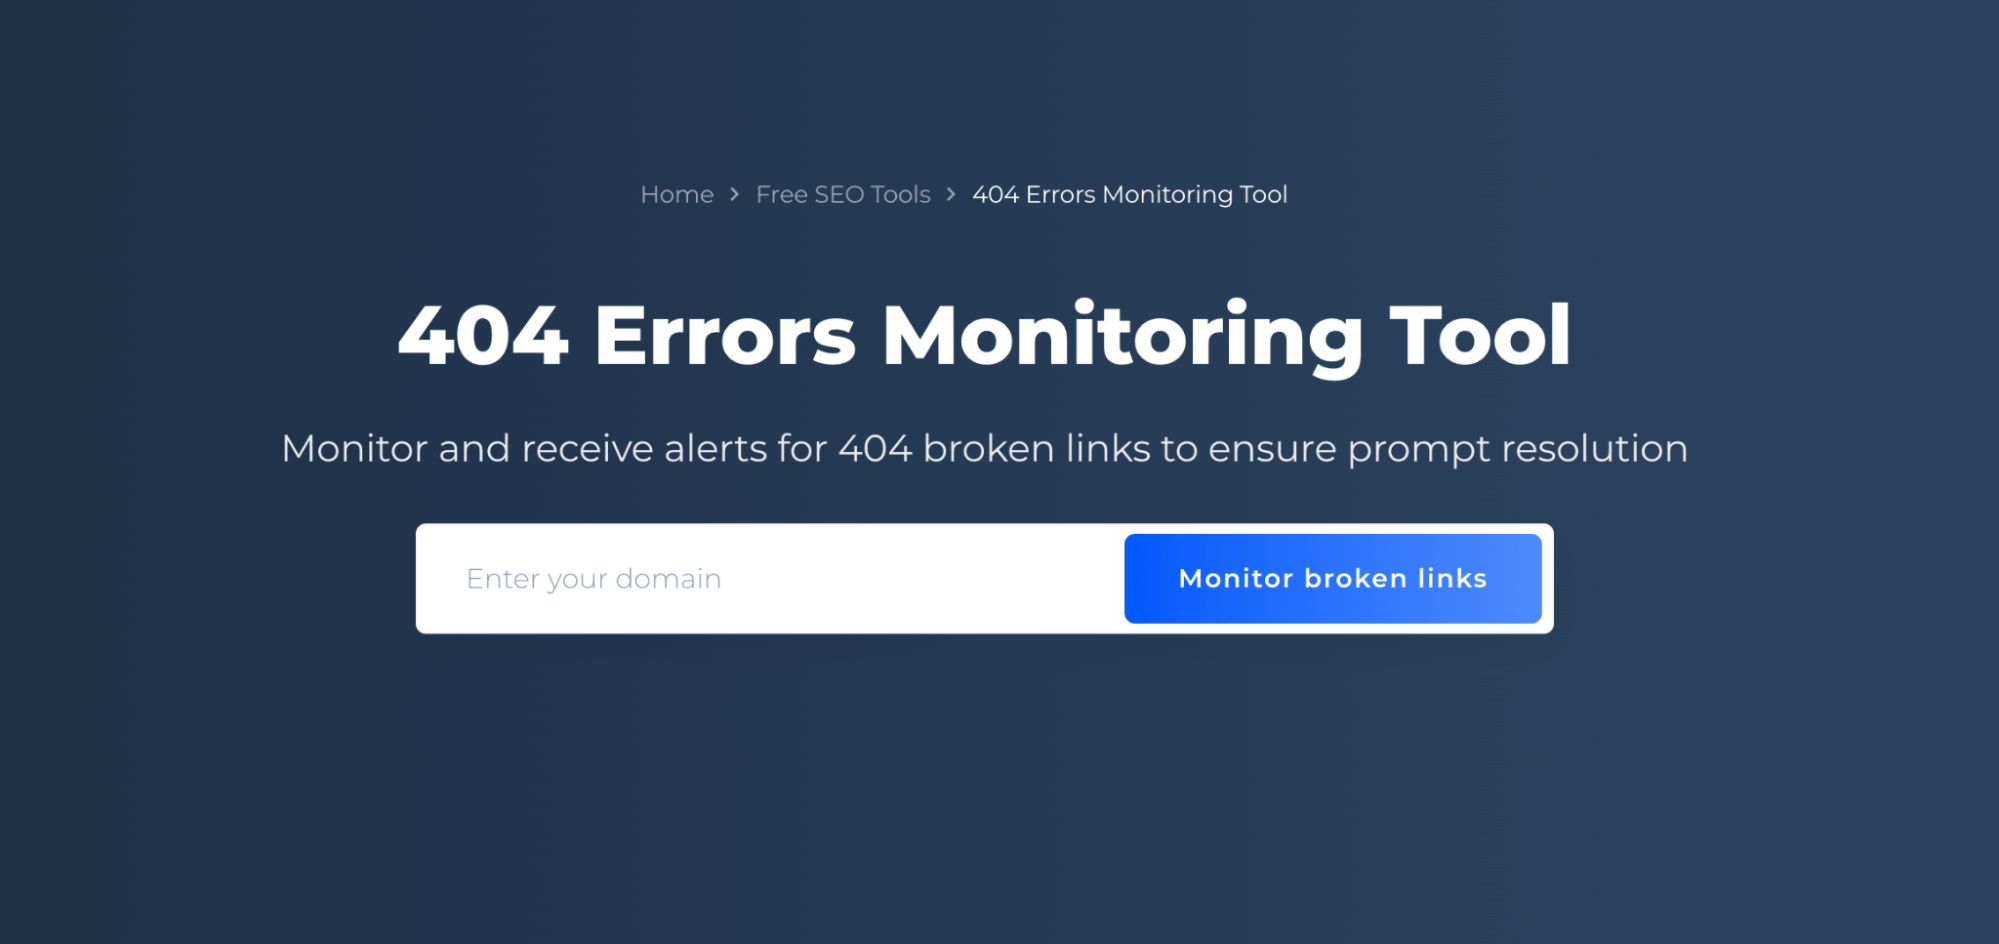 404 Errors Monitoring